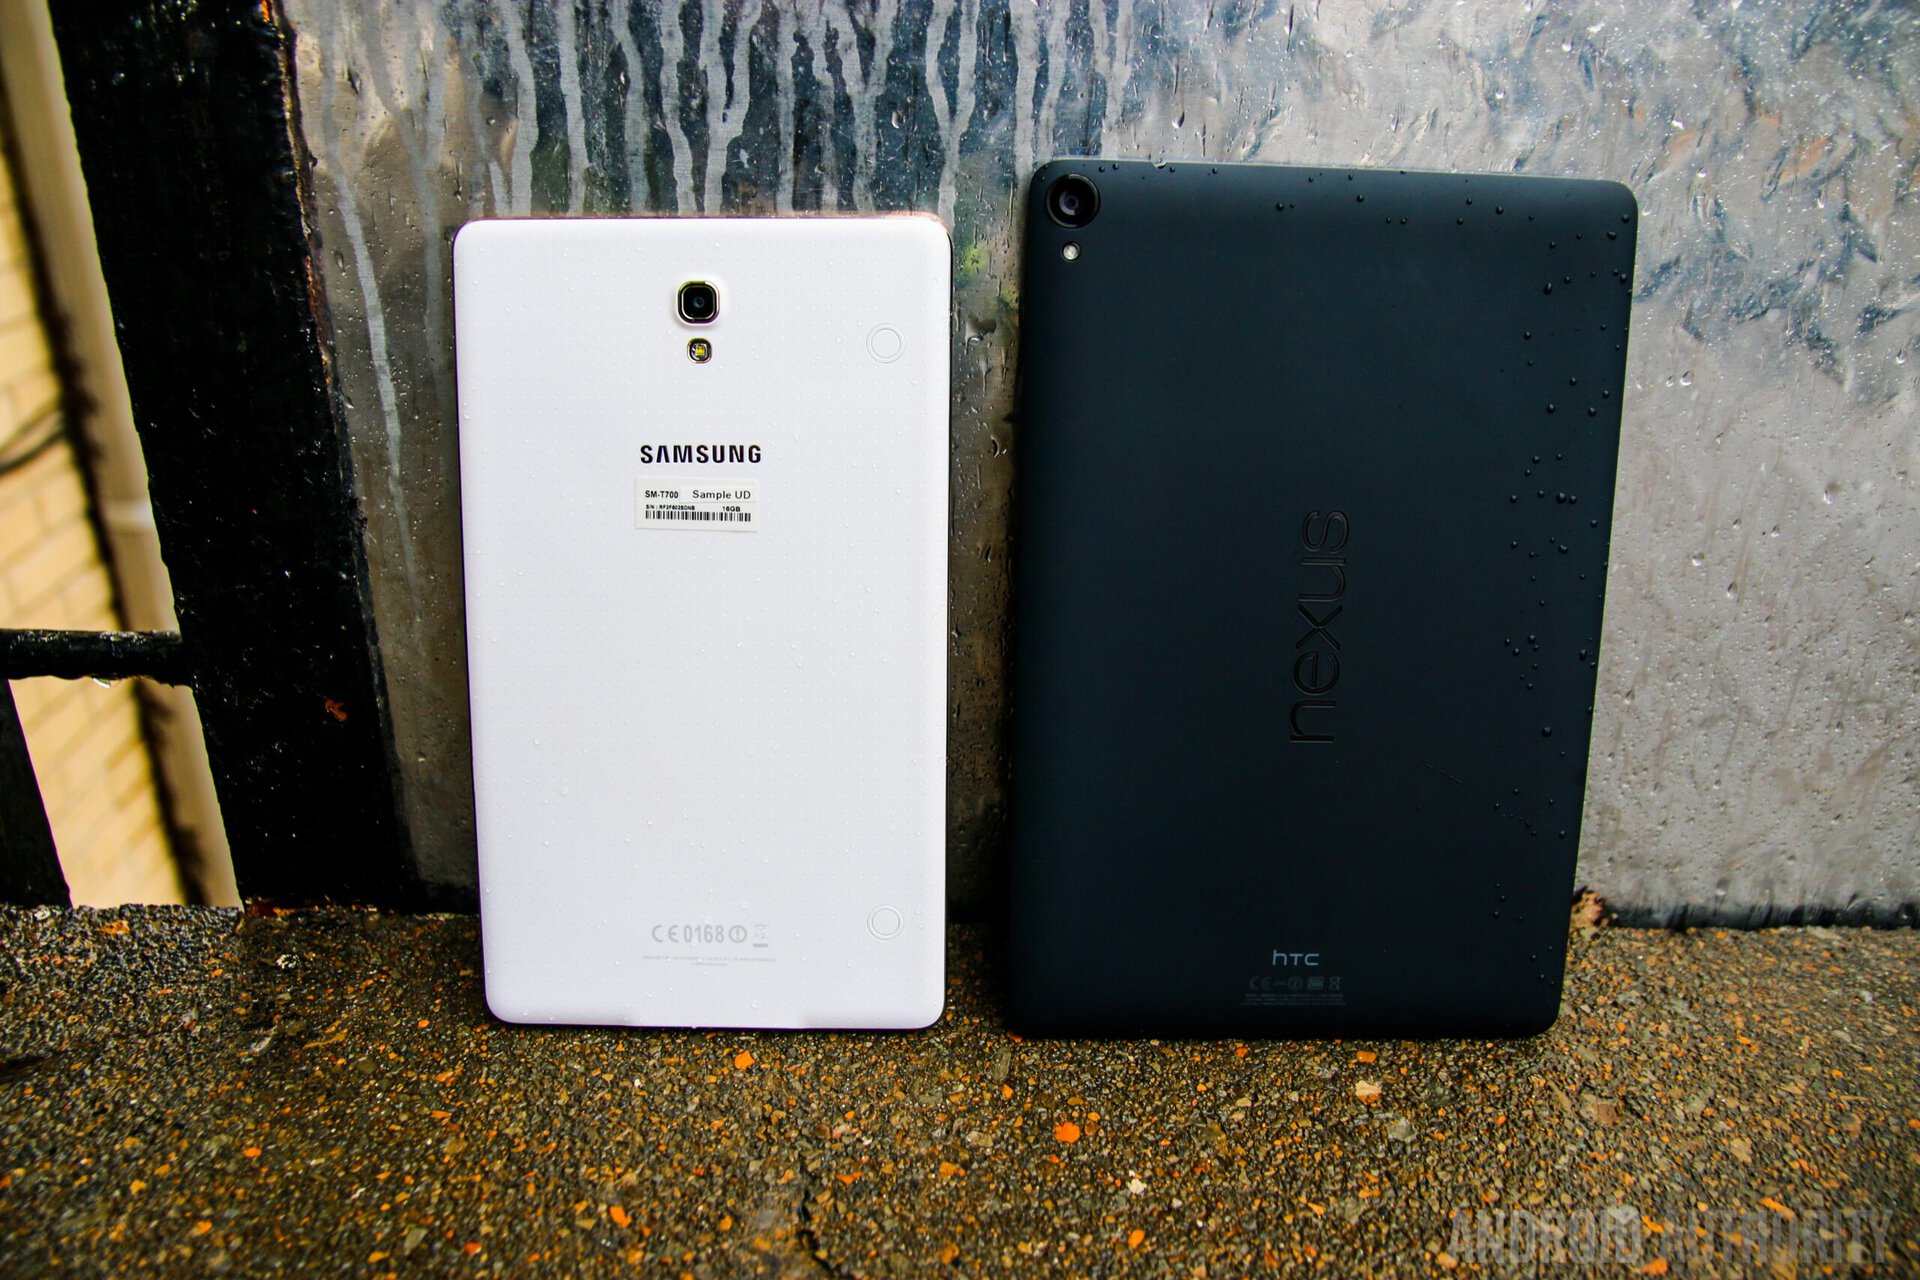 Nexus 9 Vs Samsung Galaxy Tab S 8.4-7